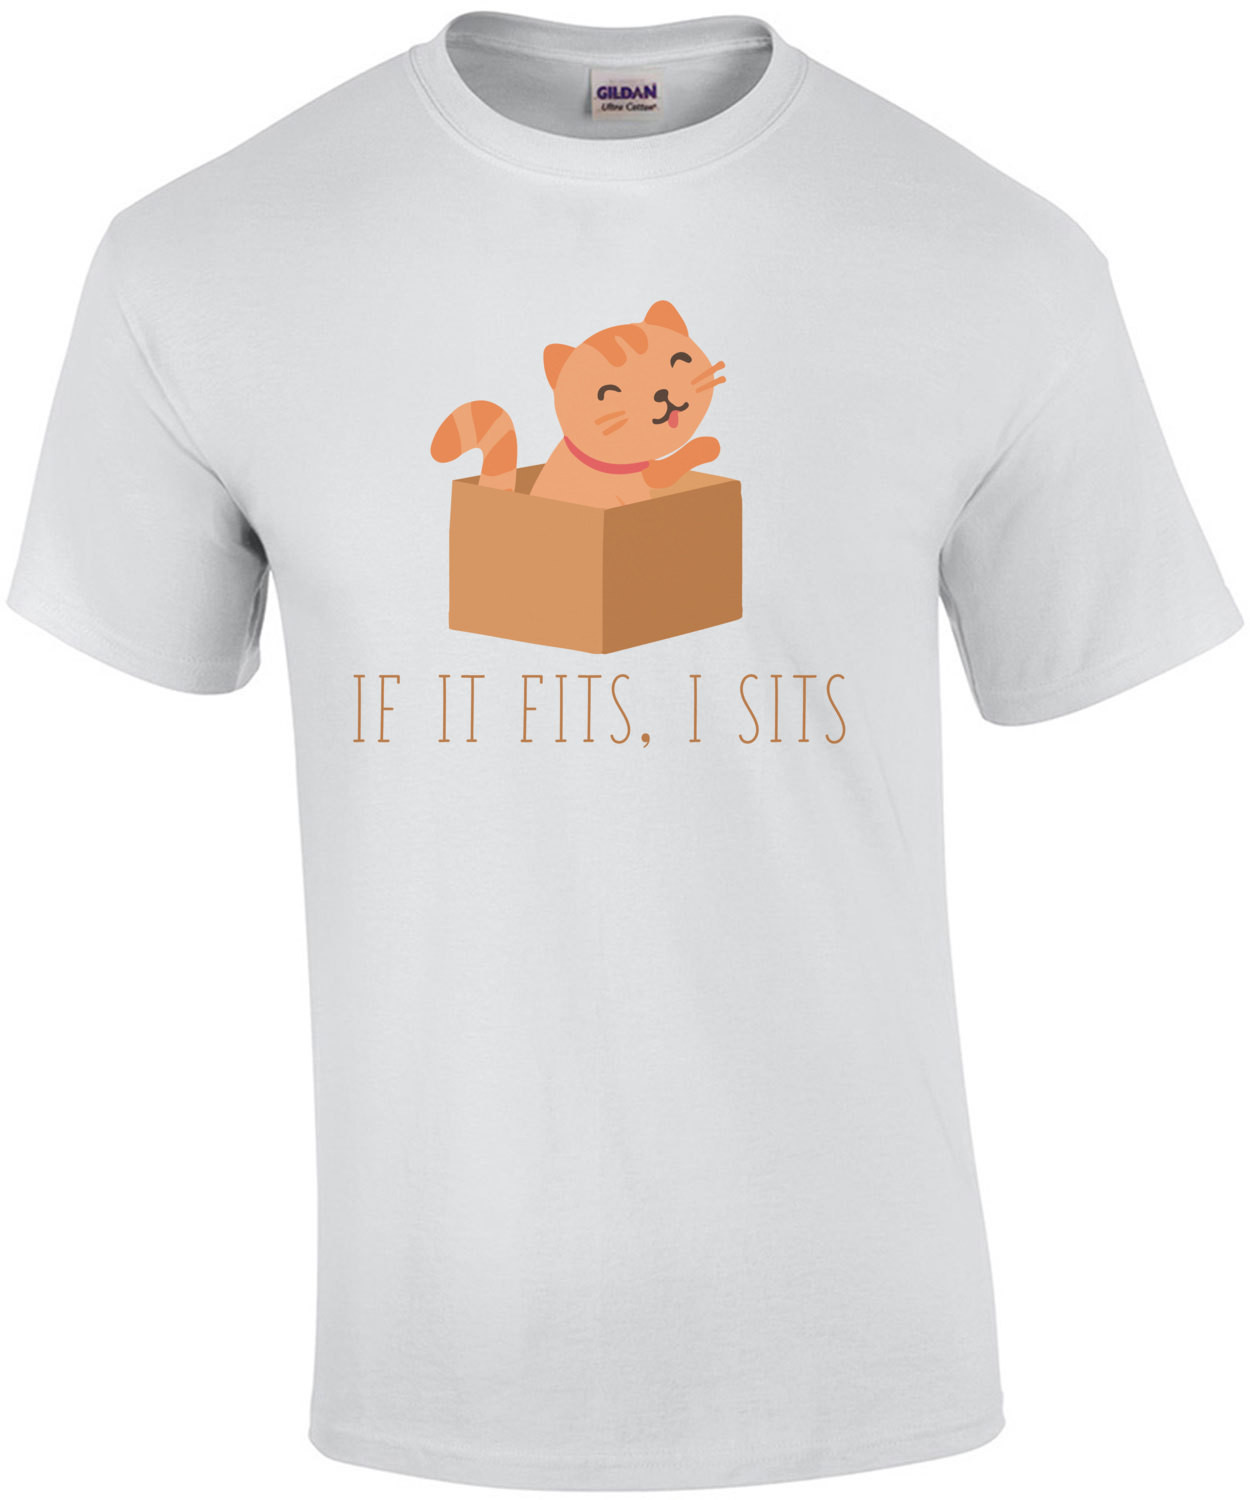 If it fits, I sits. Funny Cat T-shirt